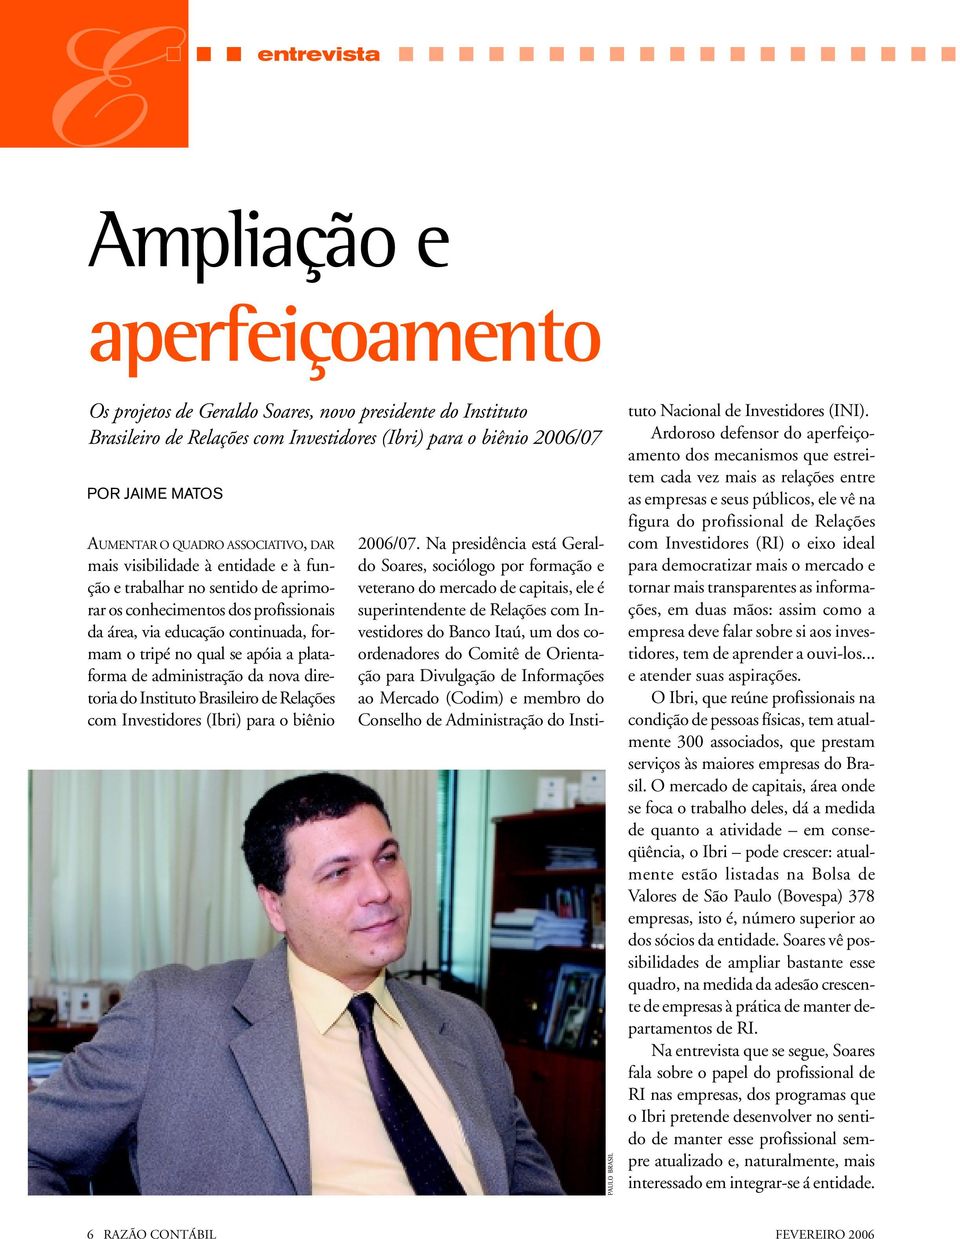 apóia a plataforma de administração da nova diretoria do Instituto Brasileiro de Relações com Investidores (Ibri) para o biênio 2006/07.